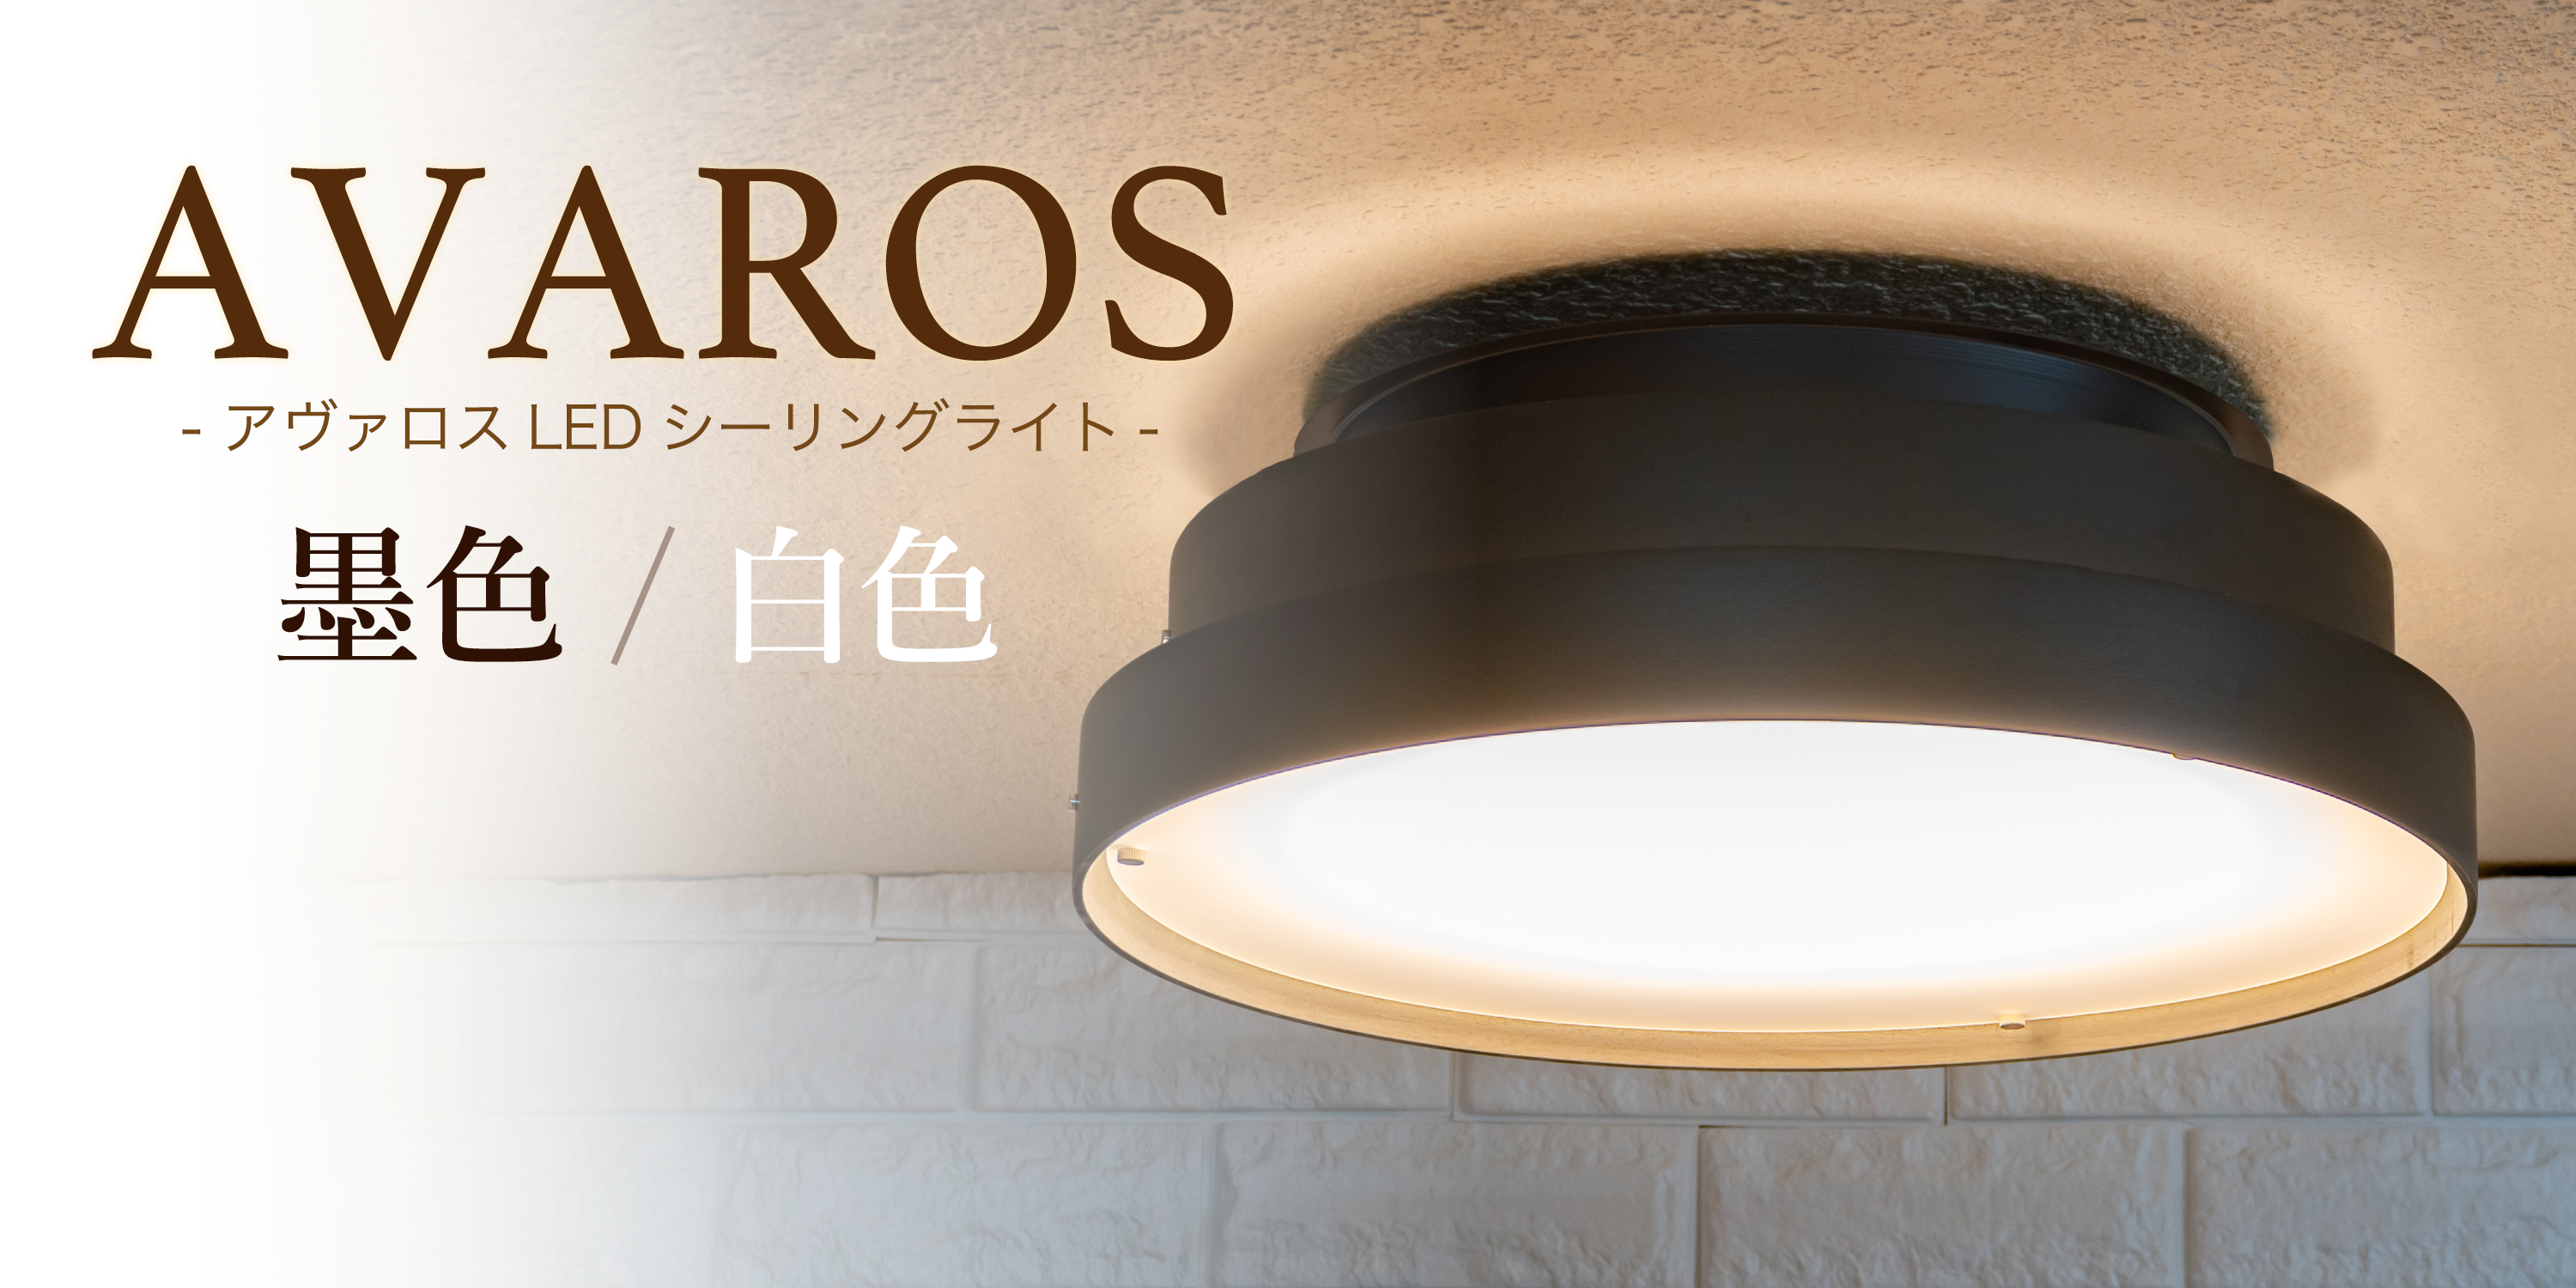 アンプールオリジナル照明 アヴァロス特別色 AVAROS Limited